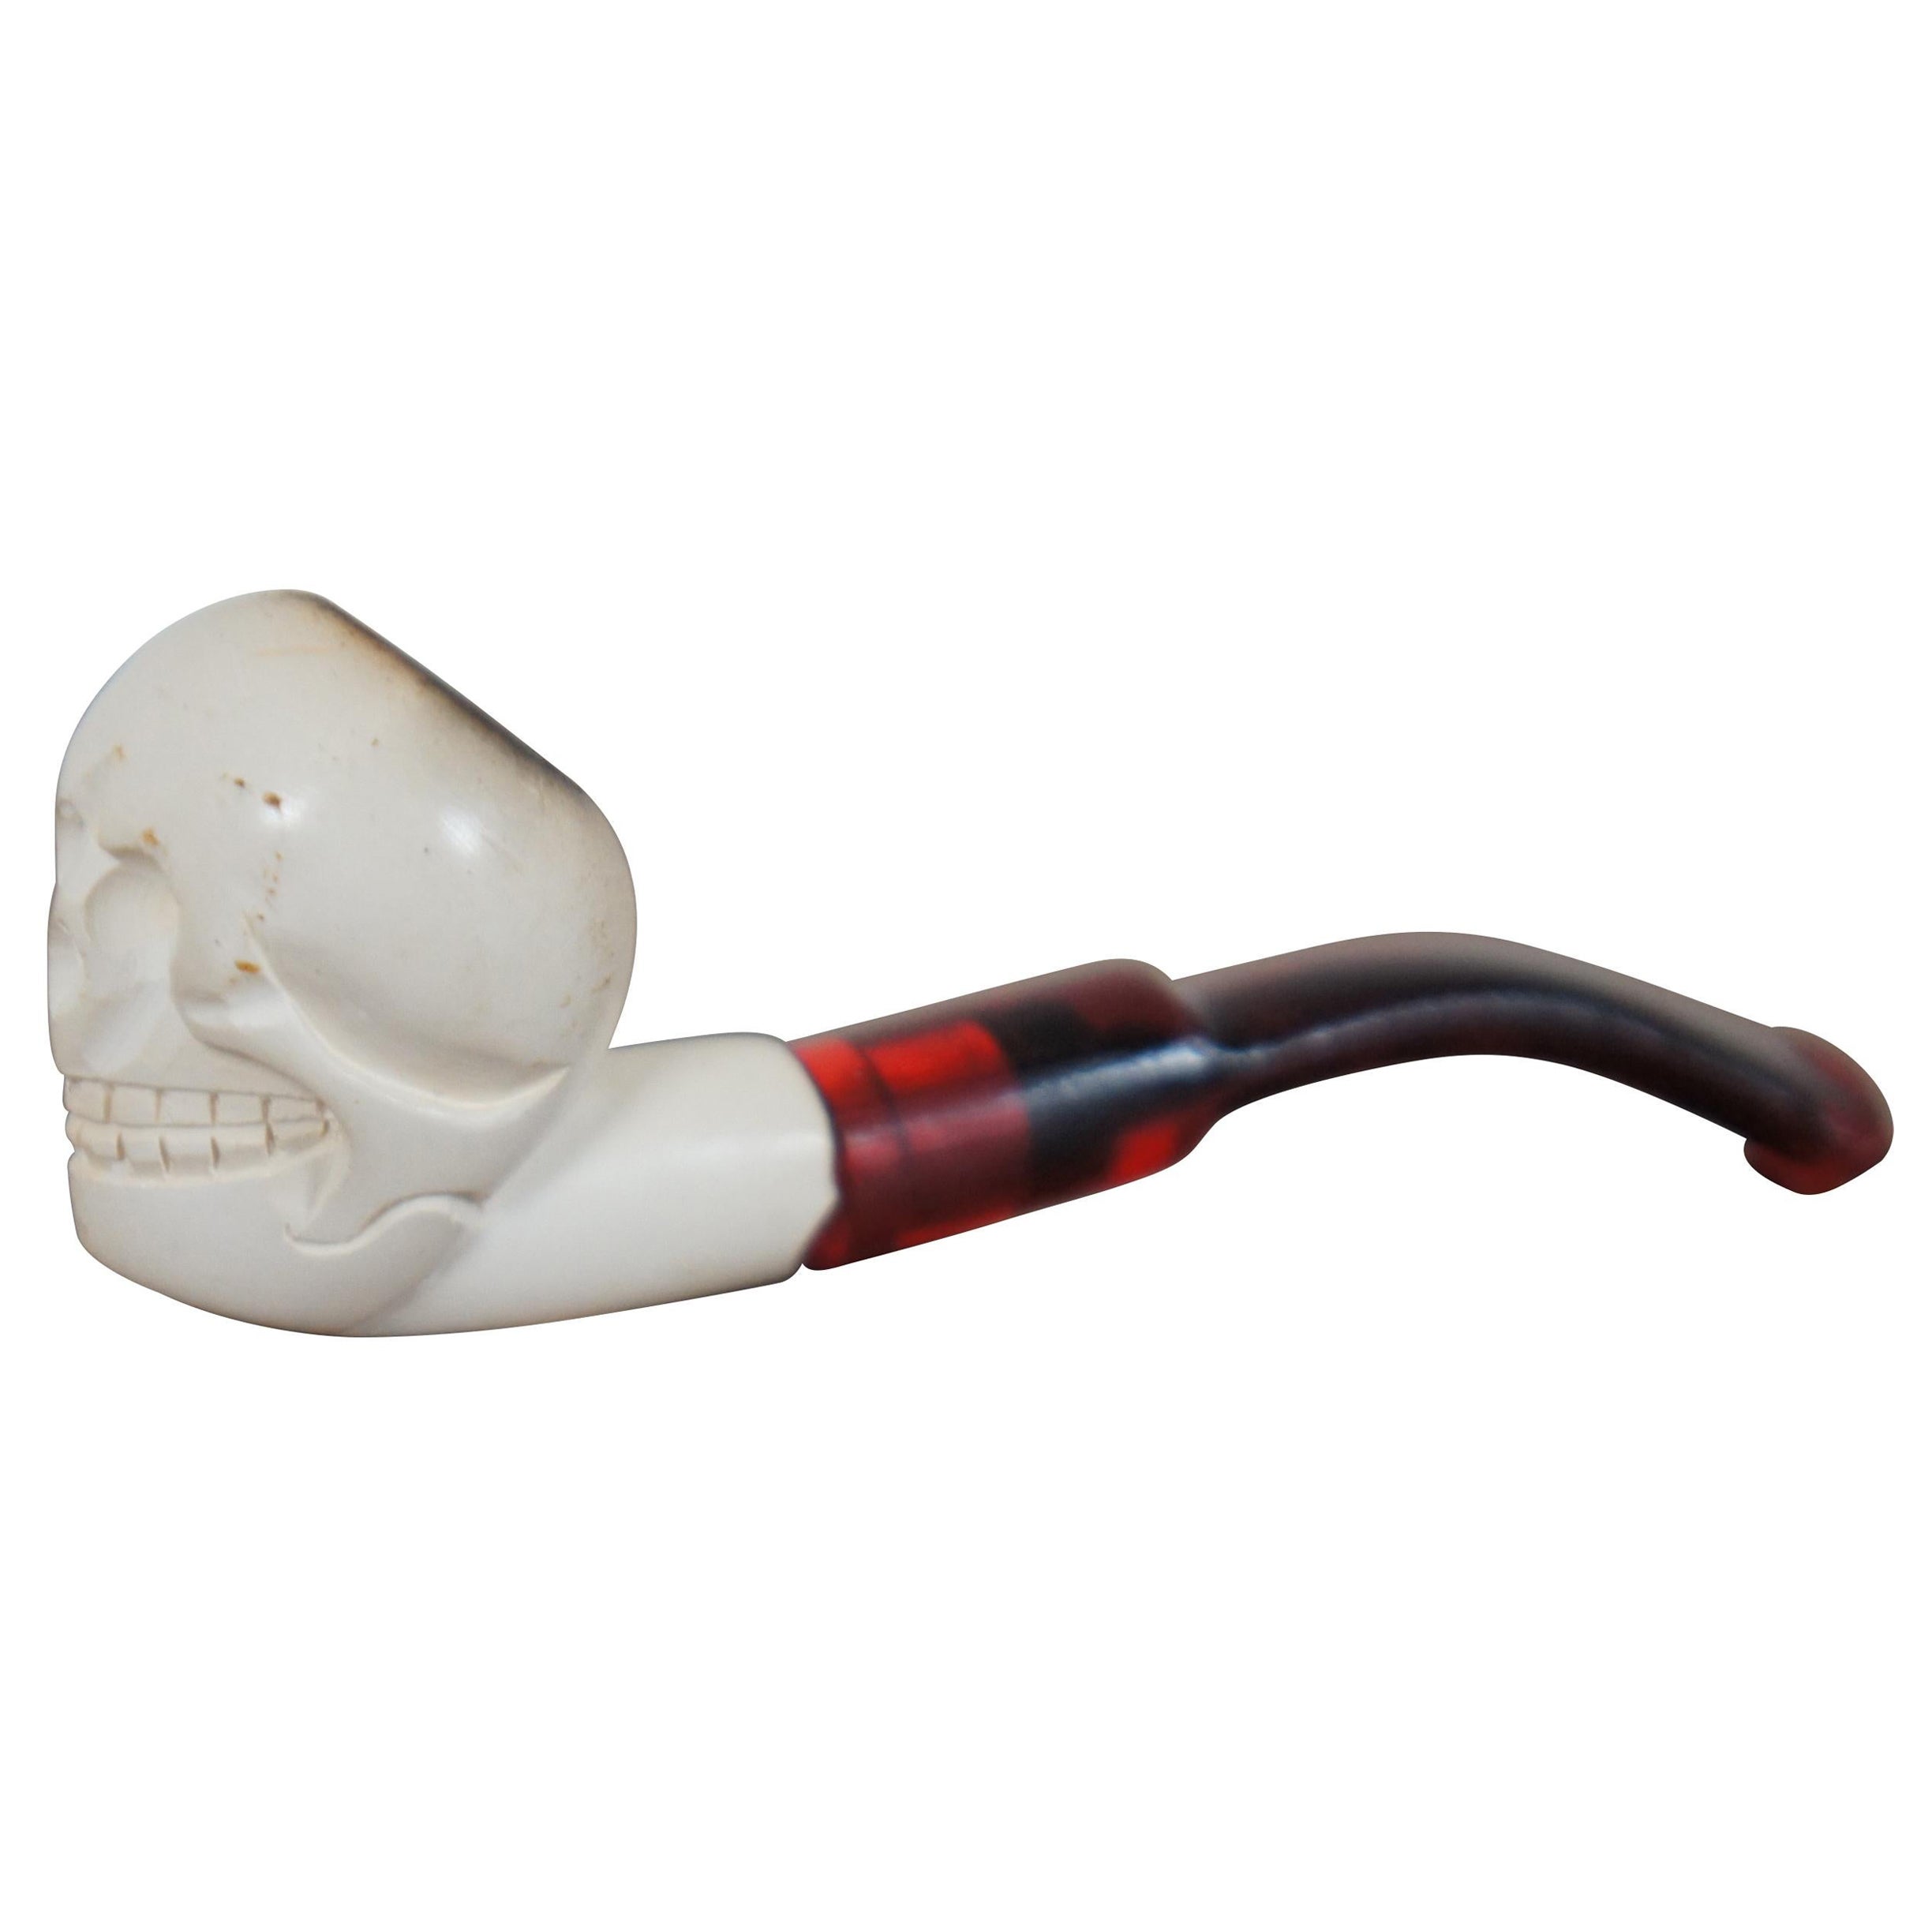 Vintage Handmade Grinning Skull Meerschaum Smoking Pipe Red Stem Skeleton